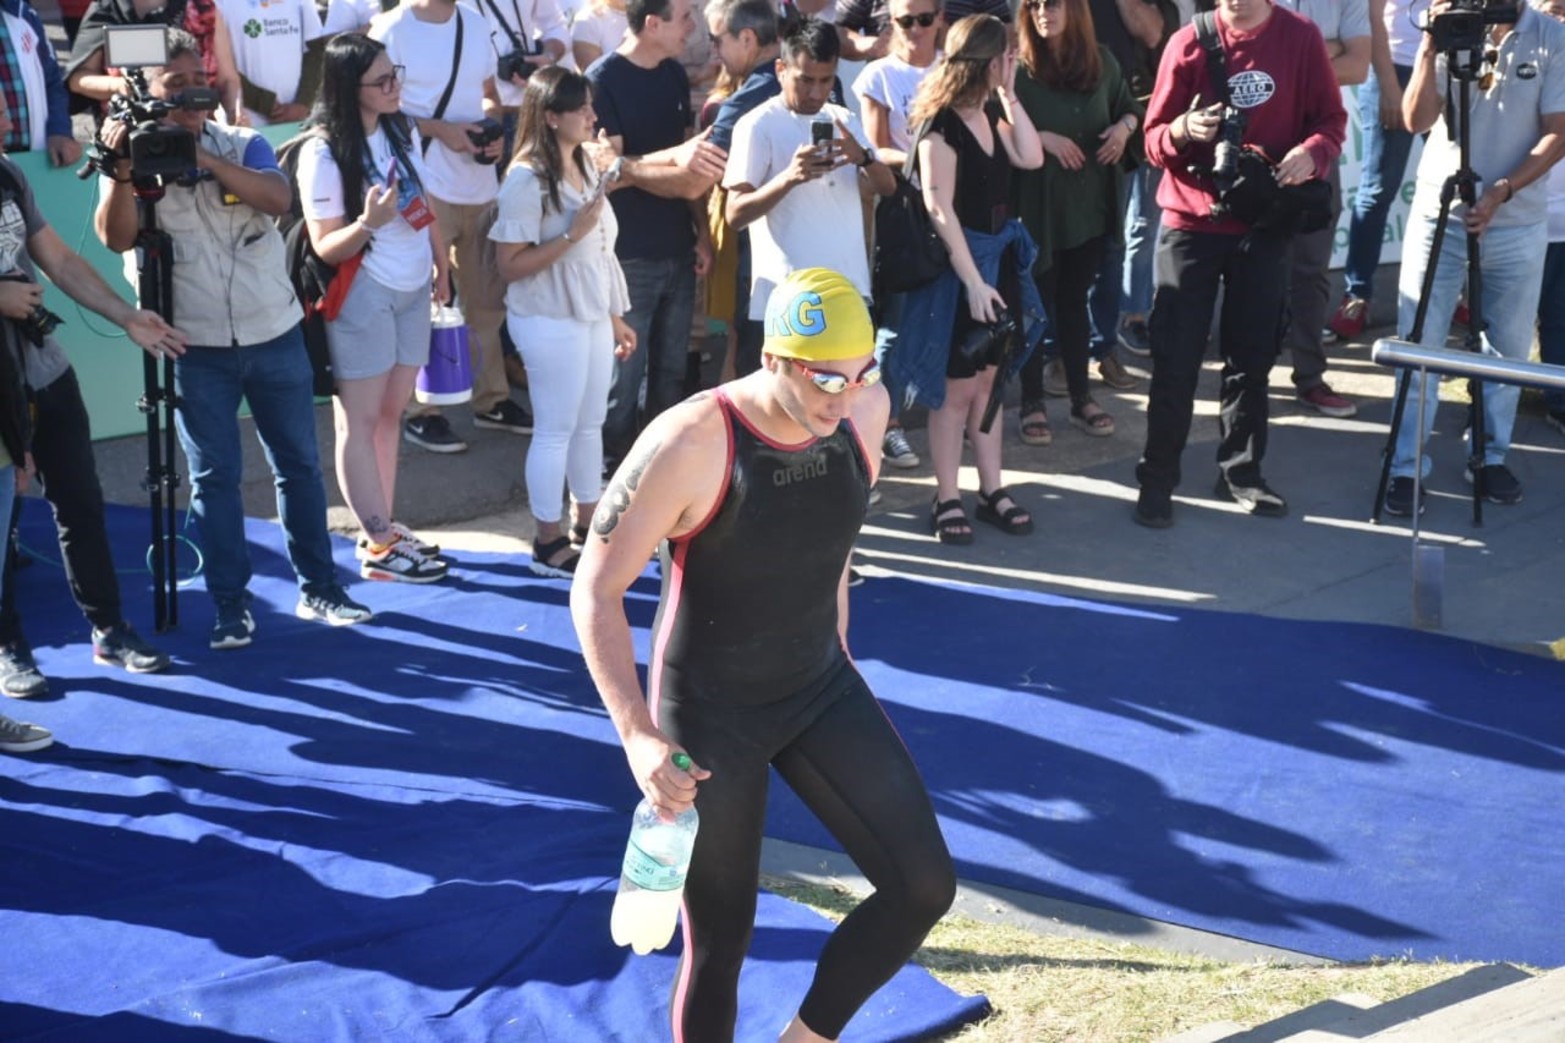 El maratón acuático Santa Fe Coronda vive una nueva edición. Flavio Raina